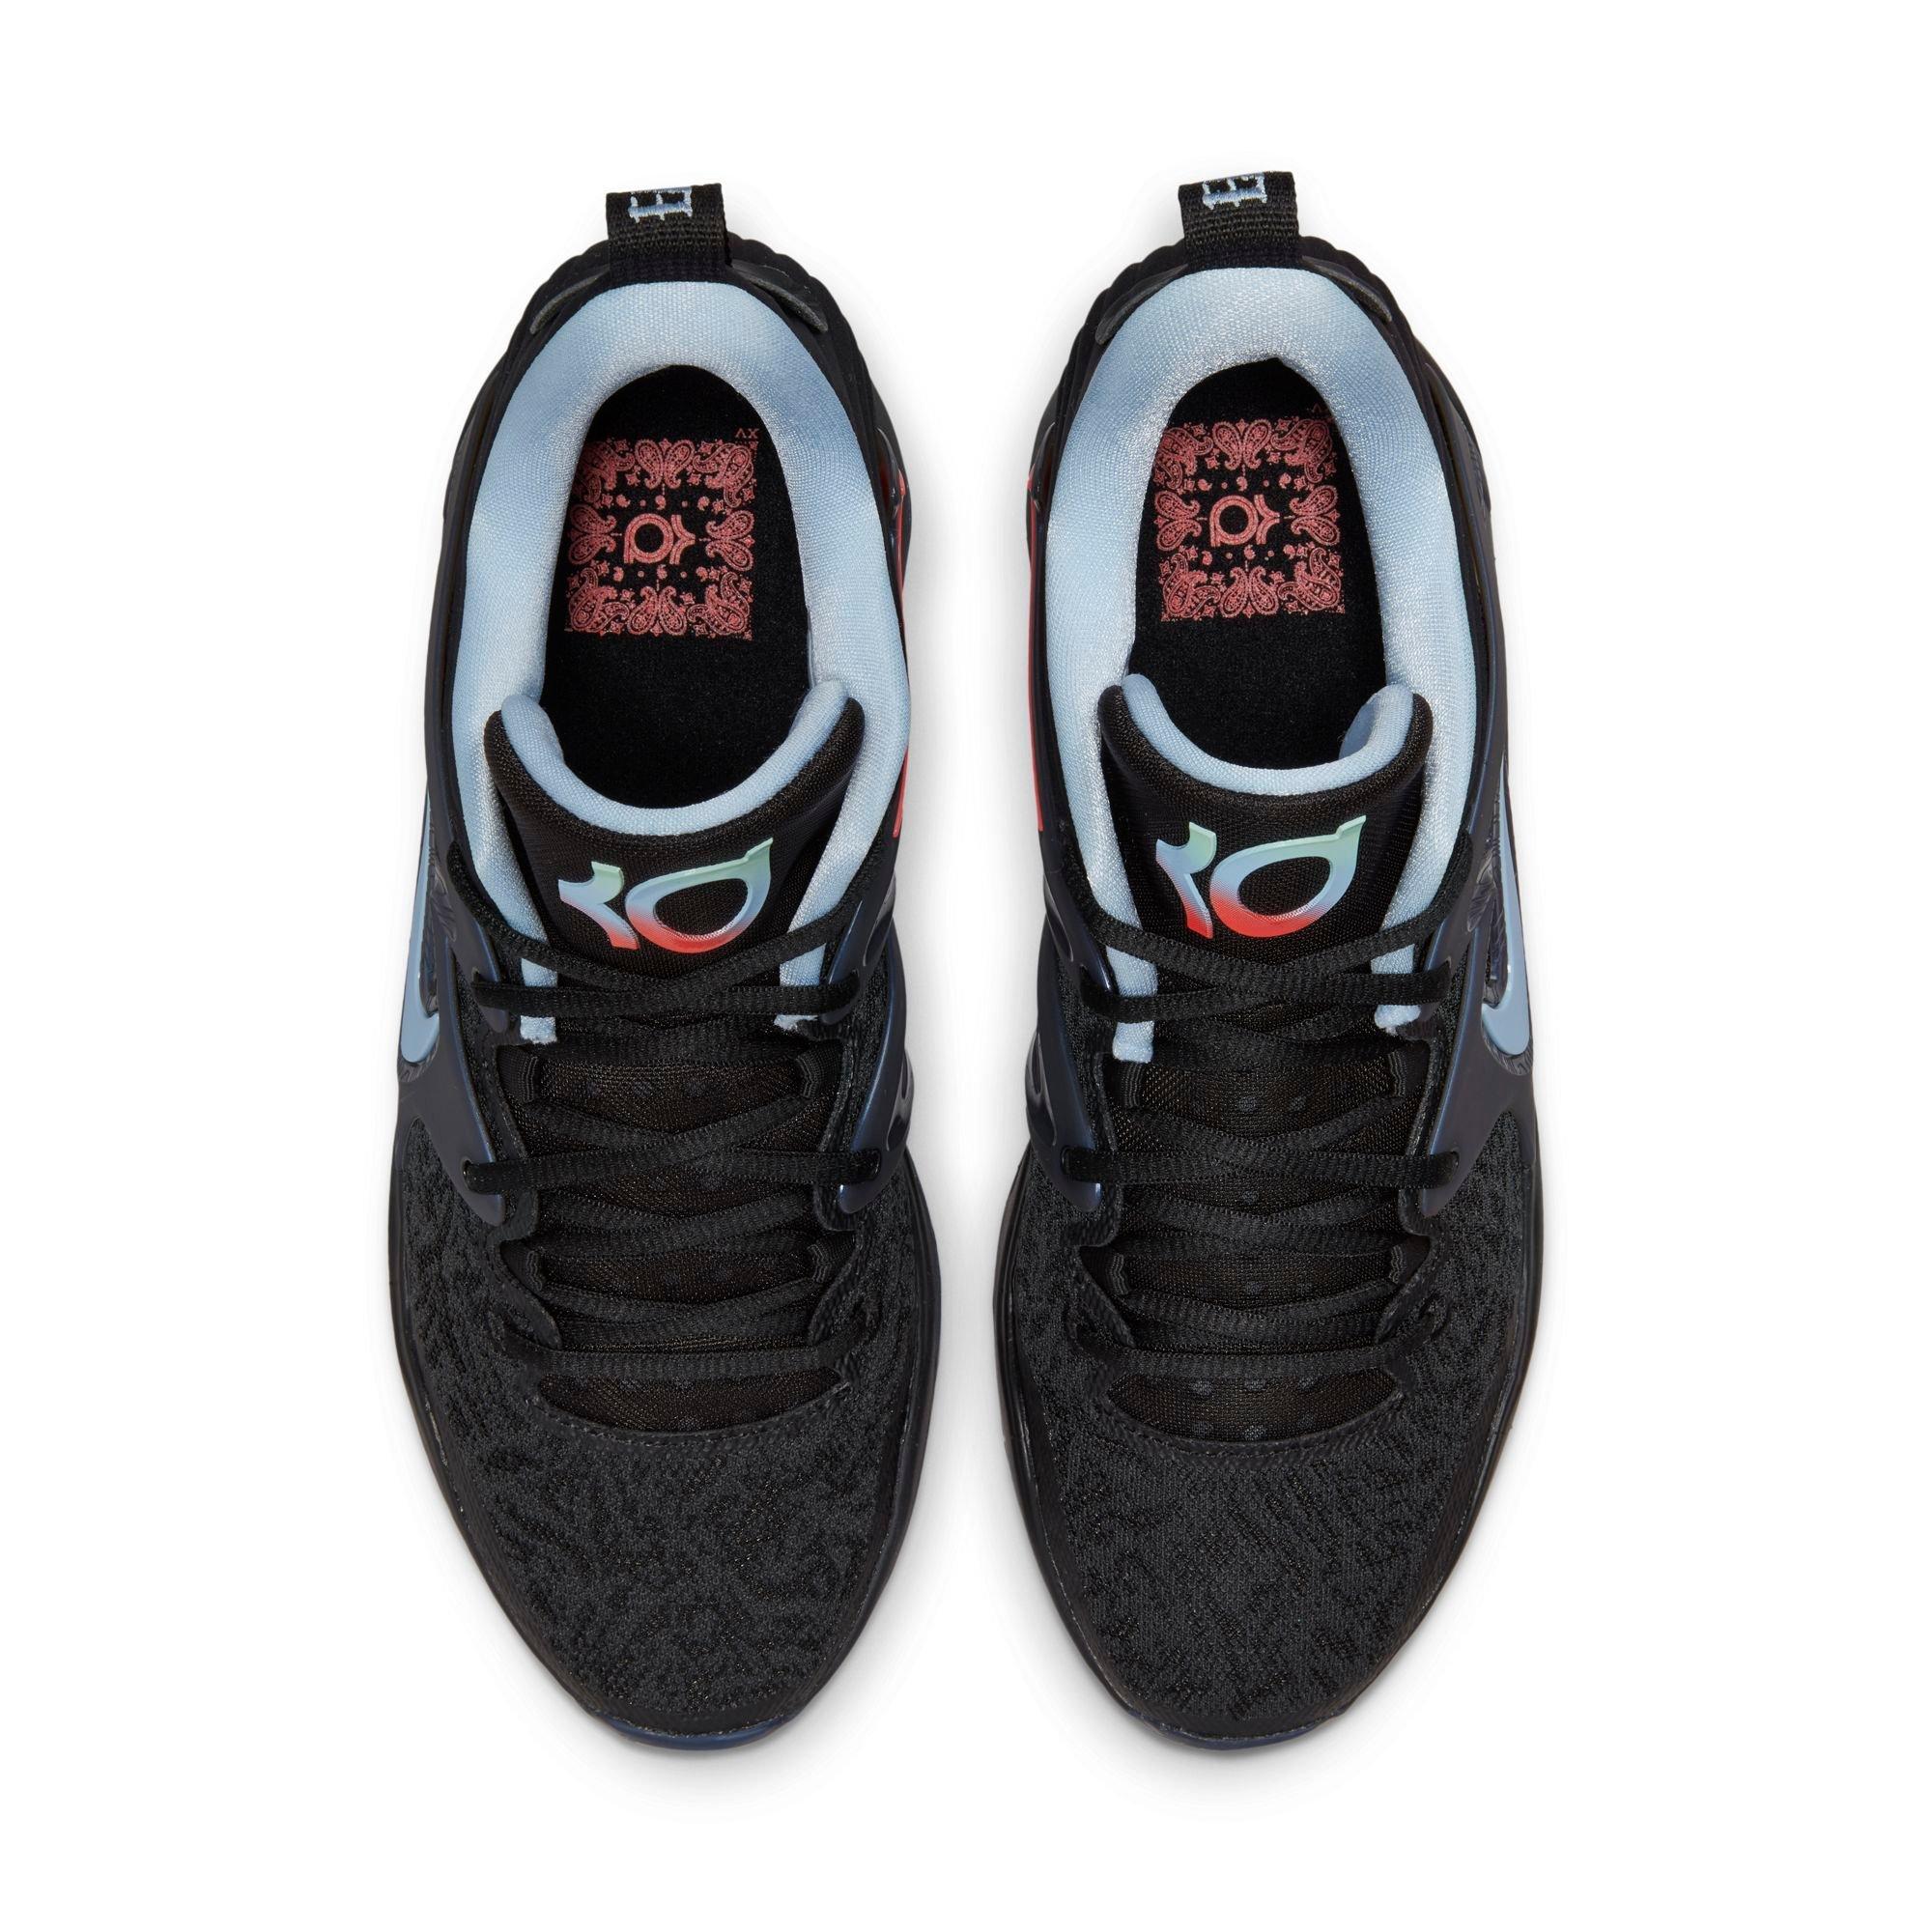 Nike KD15 White/Black/Royal Tint Men's Basketball Shoes, Size: 17